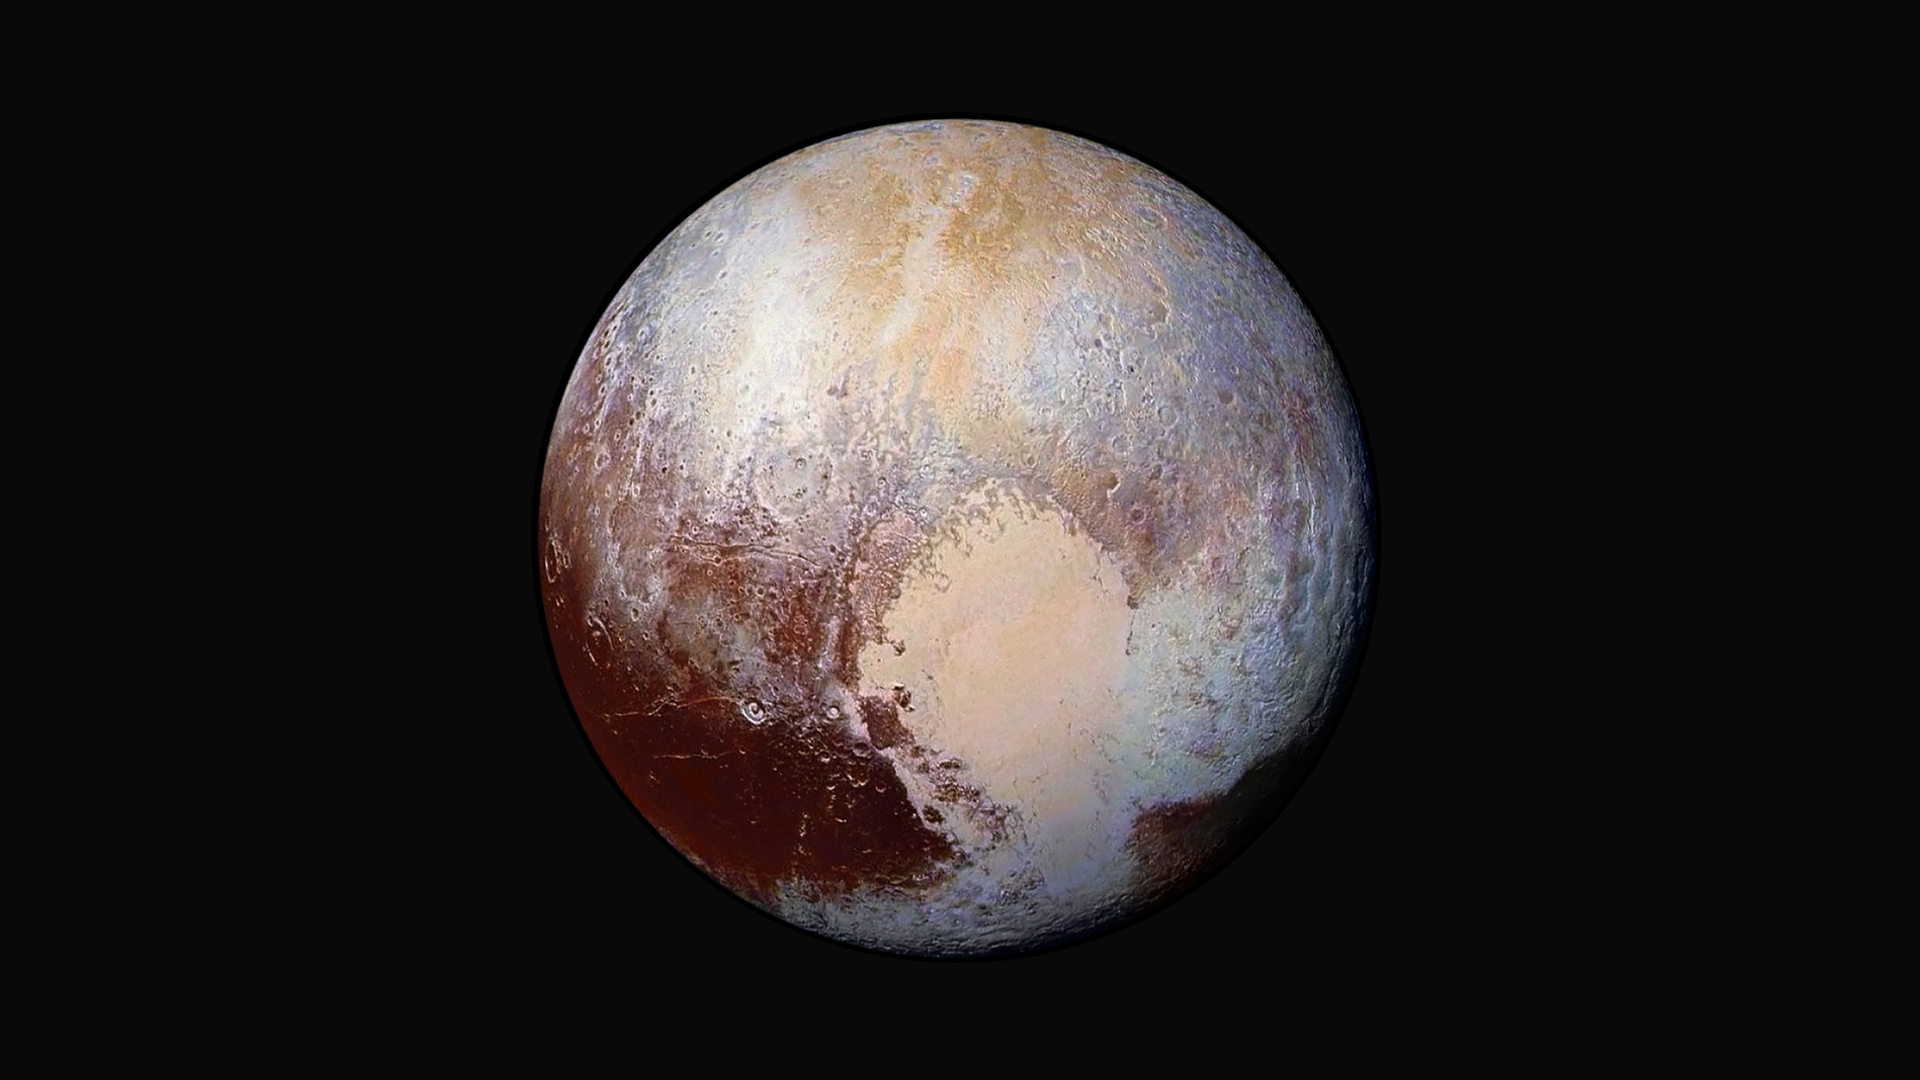 Pour ce portrait de Pluton, quatre images prises le 13 juillet avec Lorri (Long Range Reconnaissance Imager), le télescope de New Horizons, ont été superposées et colorisées à partir des données de l’instrument Ralph. Chaque tache colorée souligne la présence de matériaux différents. La sonde était à 450.000 km de Pluton lorsque ces images ont été prises. © Nasa, JHUAPL, SwRI